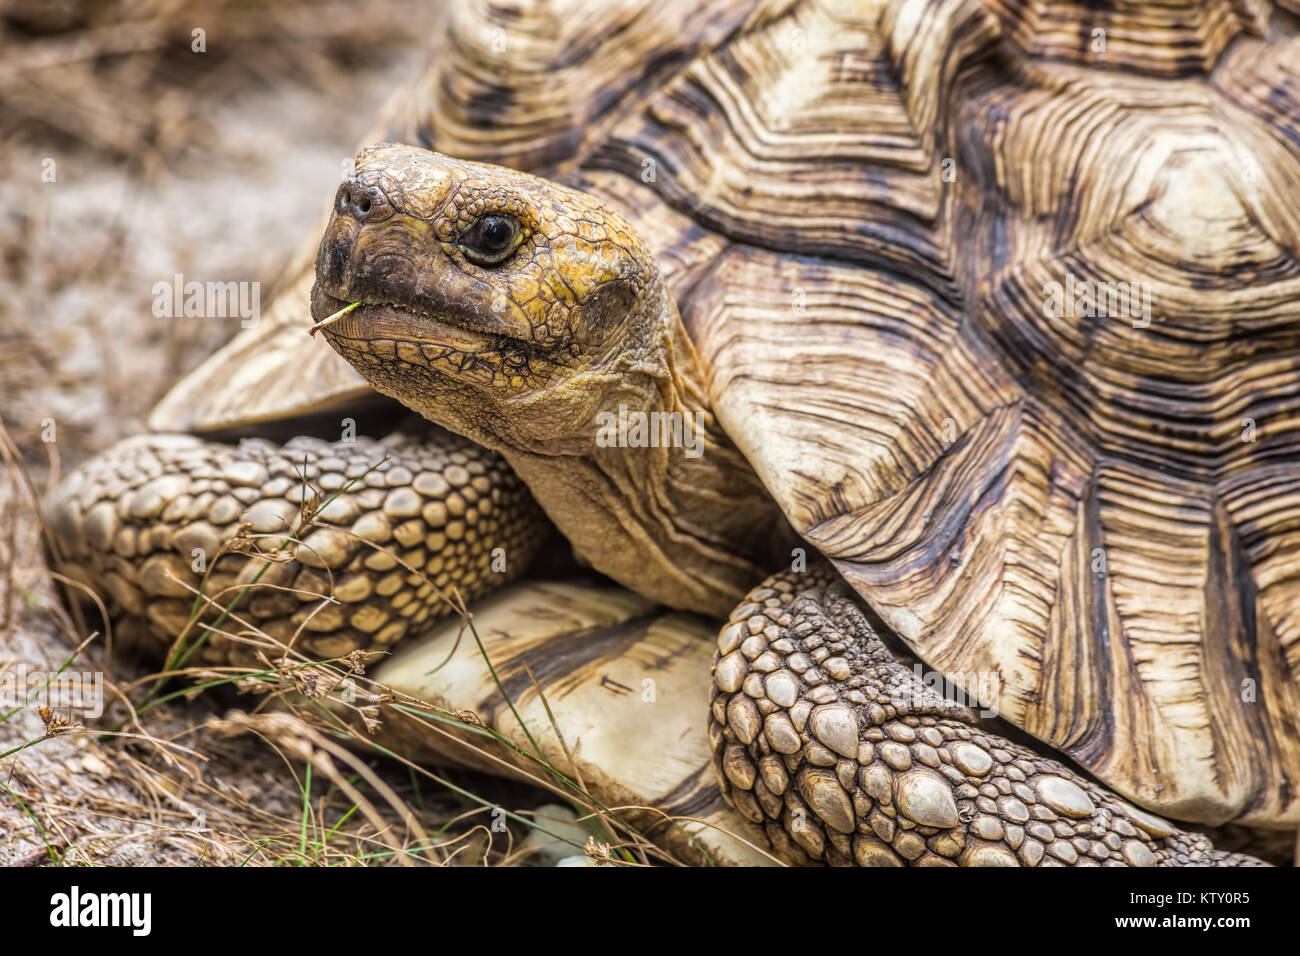 Près d'une tortue géante d'Aldabra (Aldabrachelys gigantea) Banque D'Images